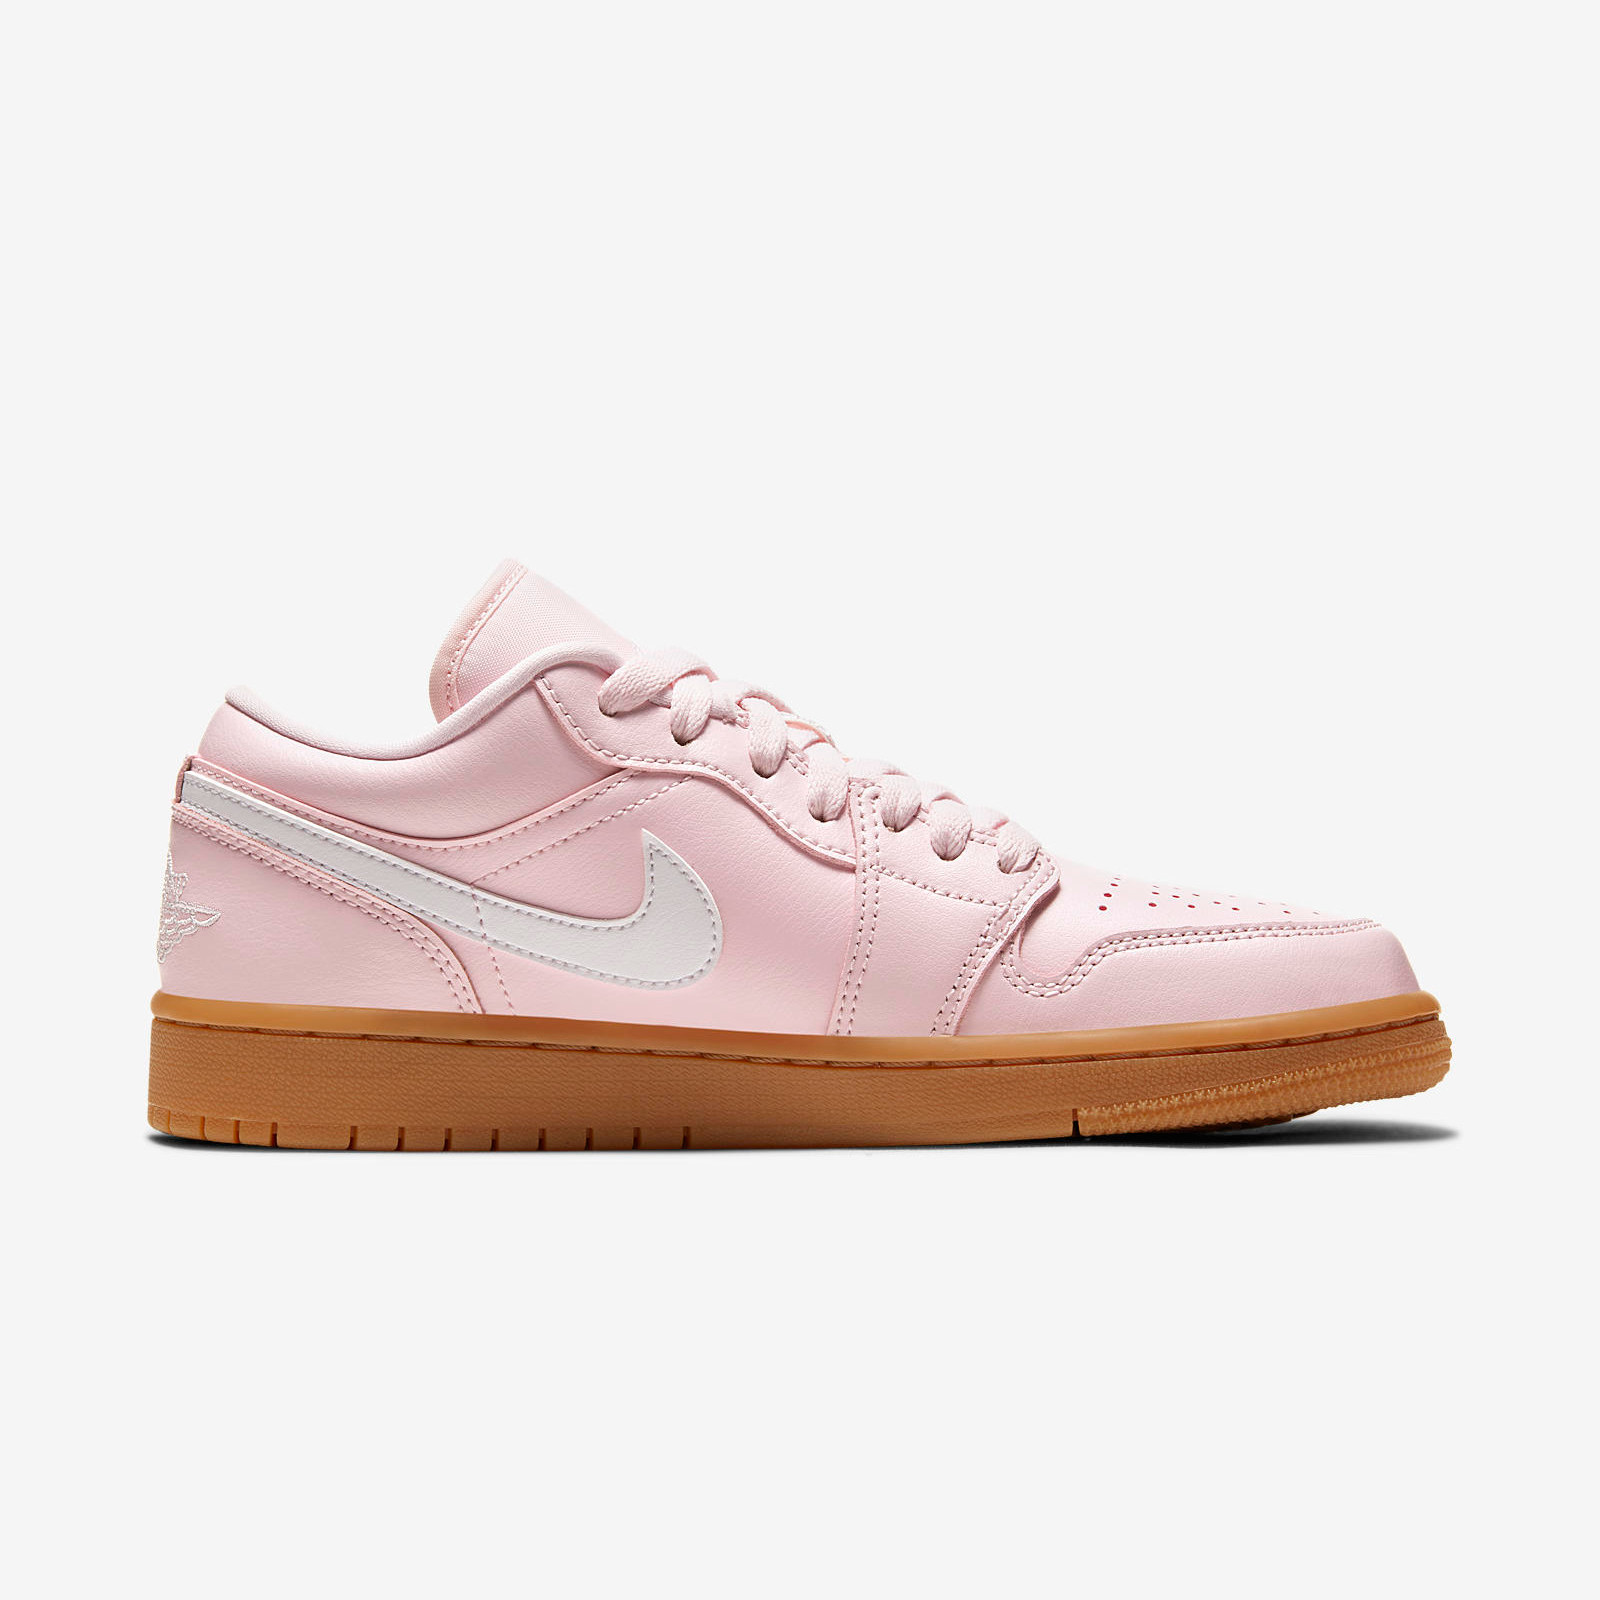 Air Jordan 1 Low
Arctic Pink / Gum